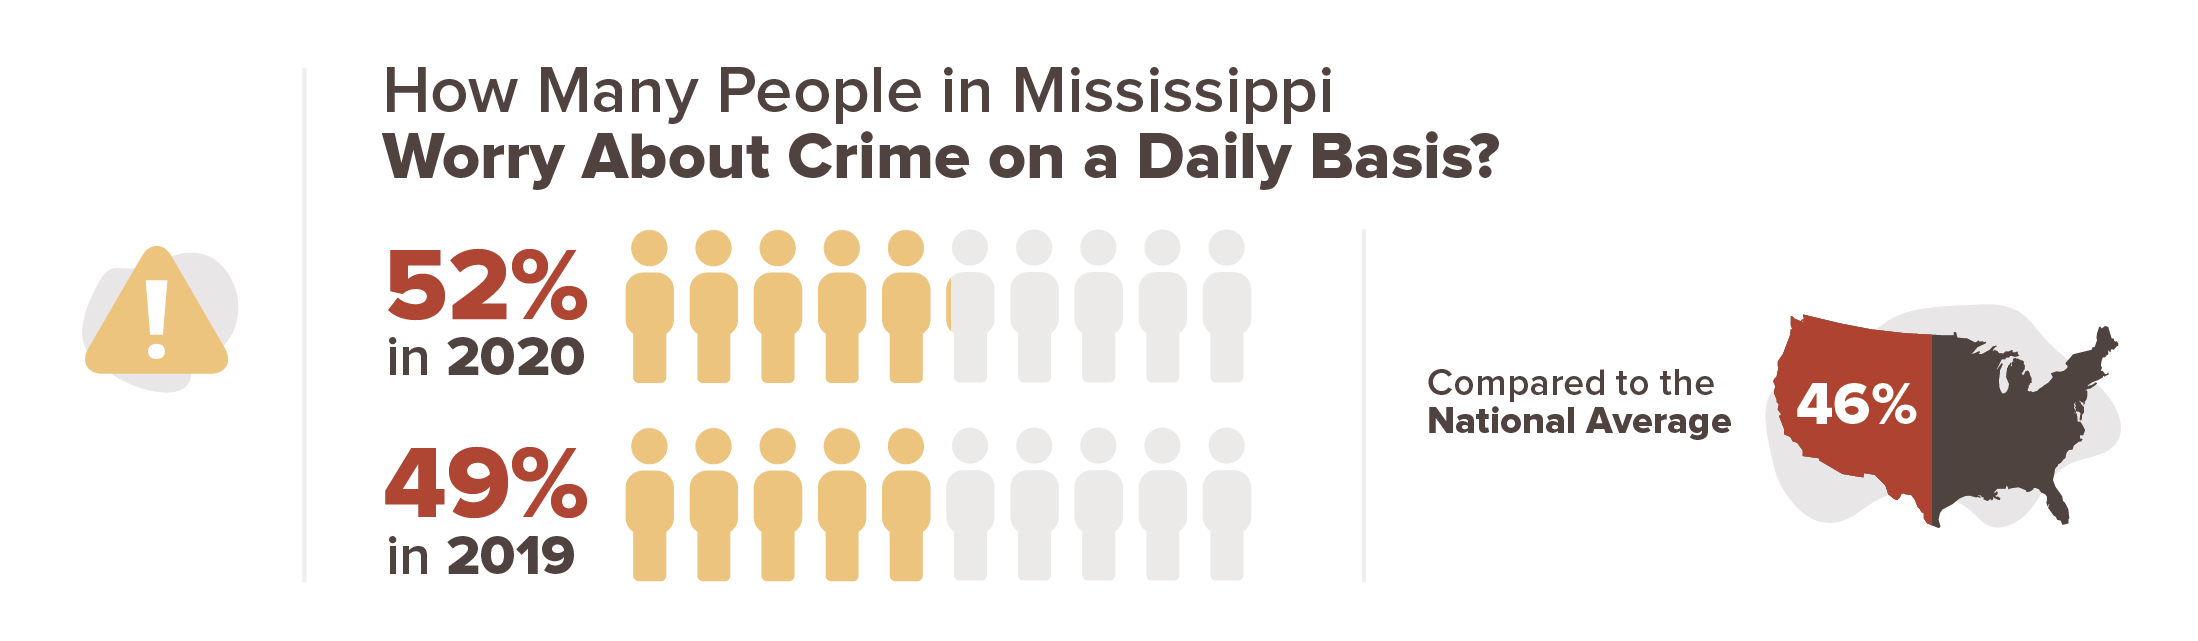 Mississippi crime concern infographic